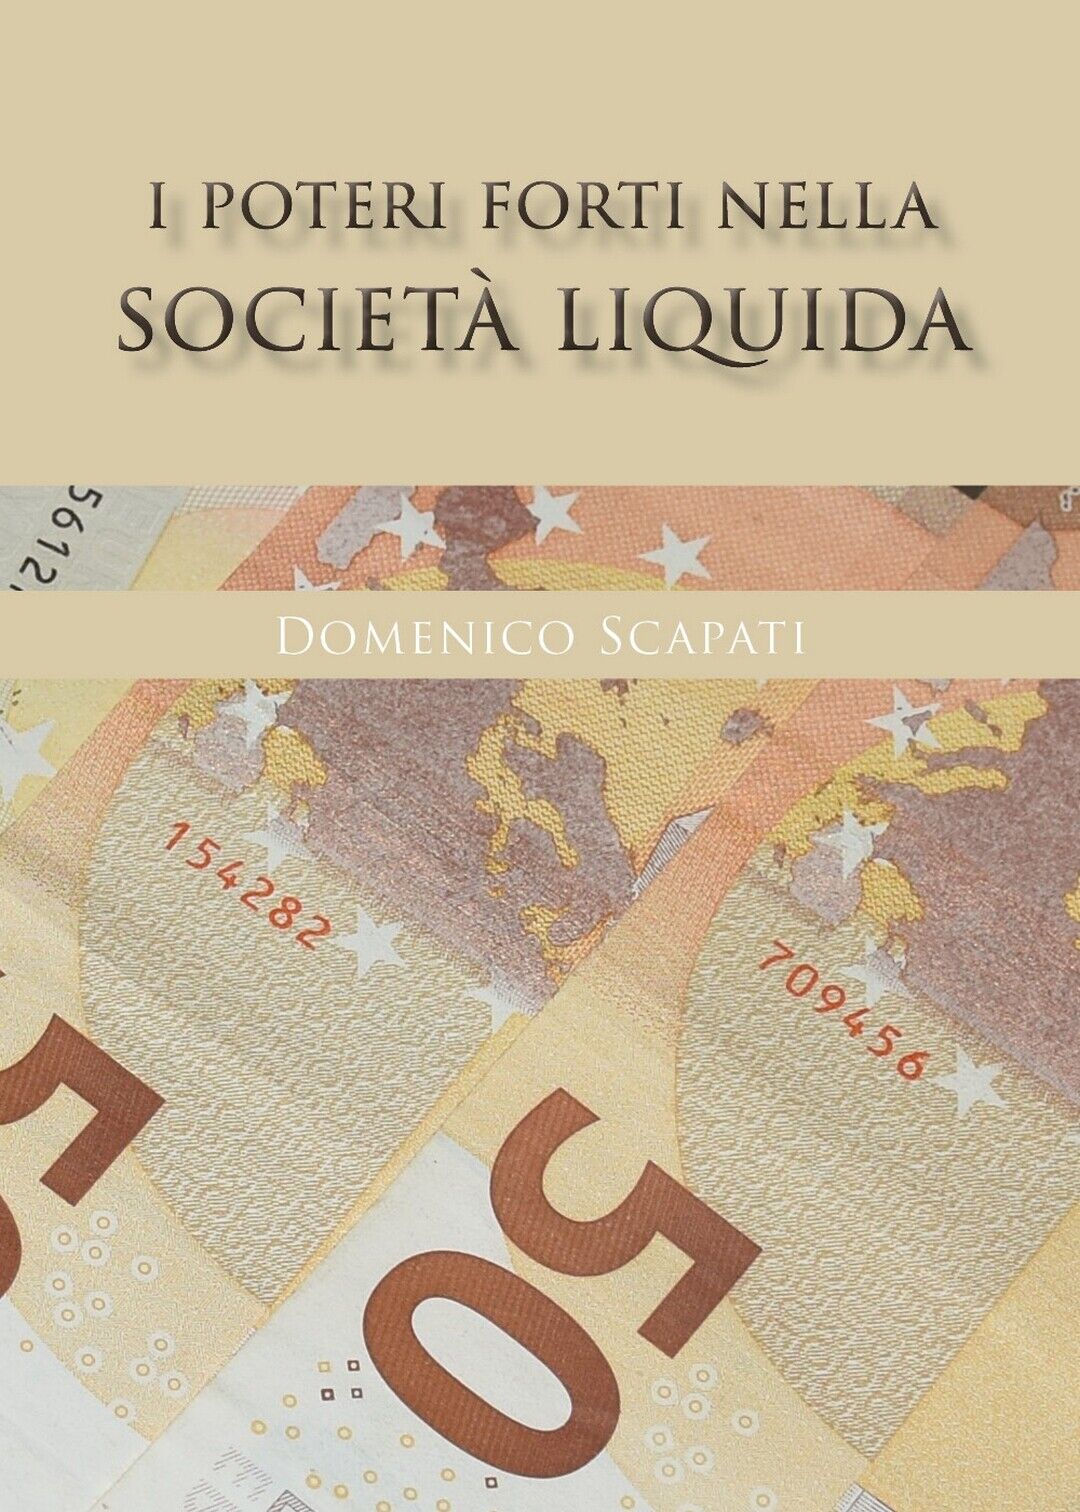 I poteri forti nella societ? liquida  di Domenico Scapati,  2020,  Youcanprint